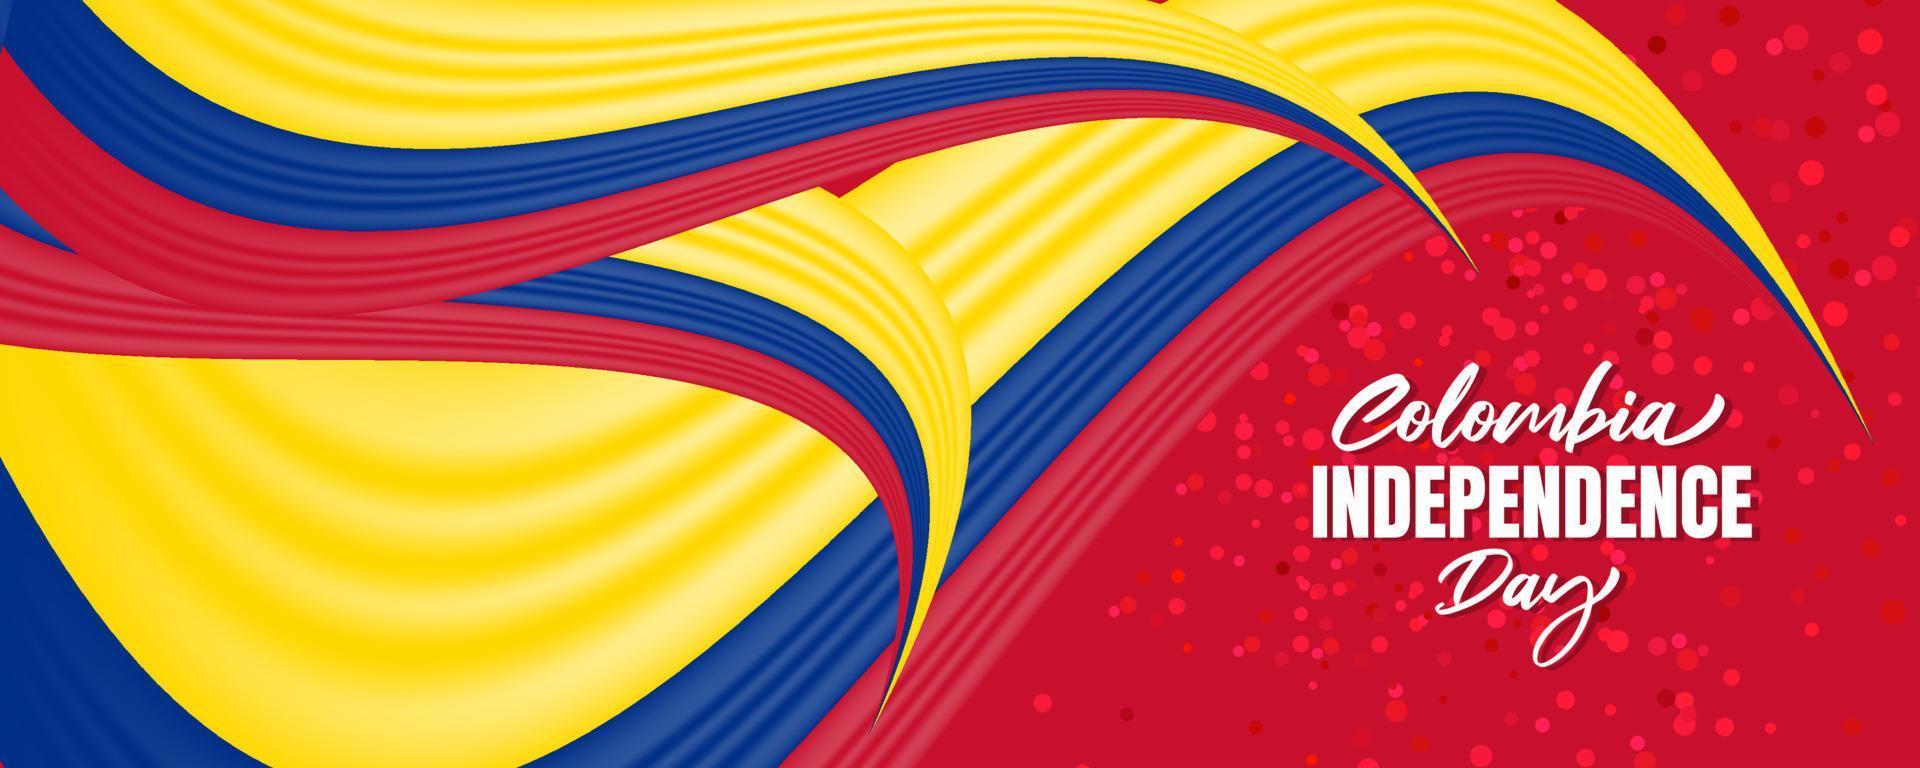 dia da independência da colômbia com bandeira da colômbia acenando e design de fundo de cor vermelha vetor